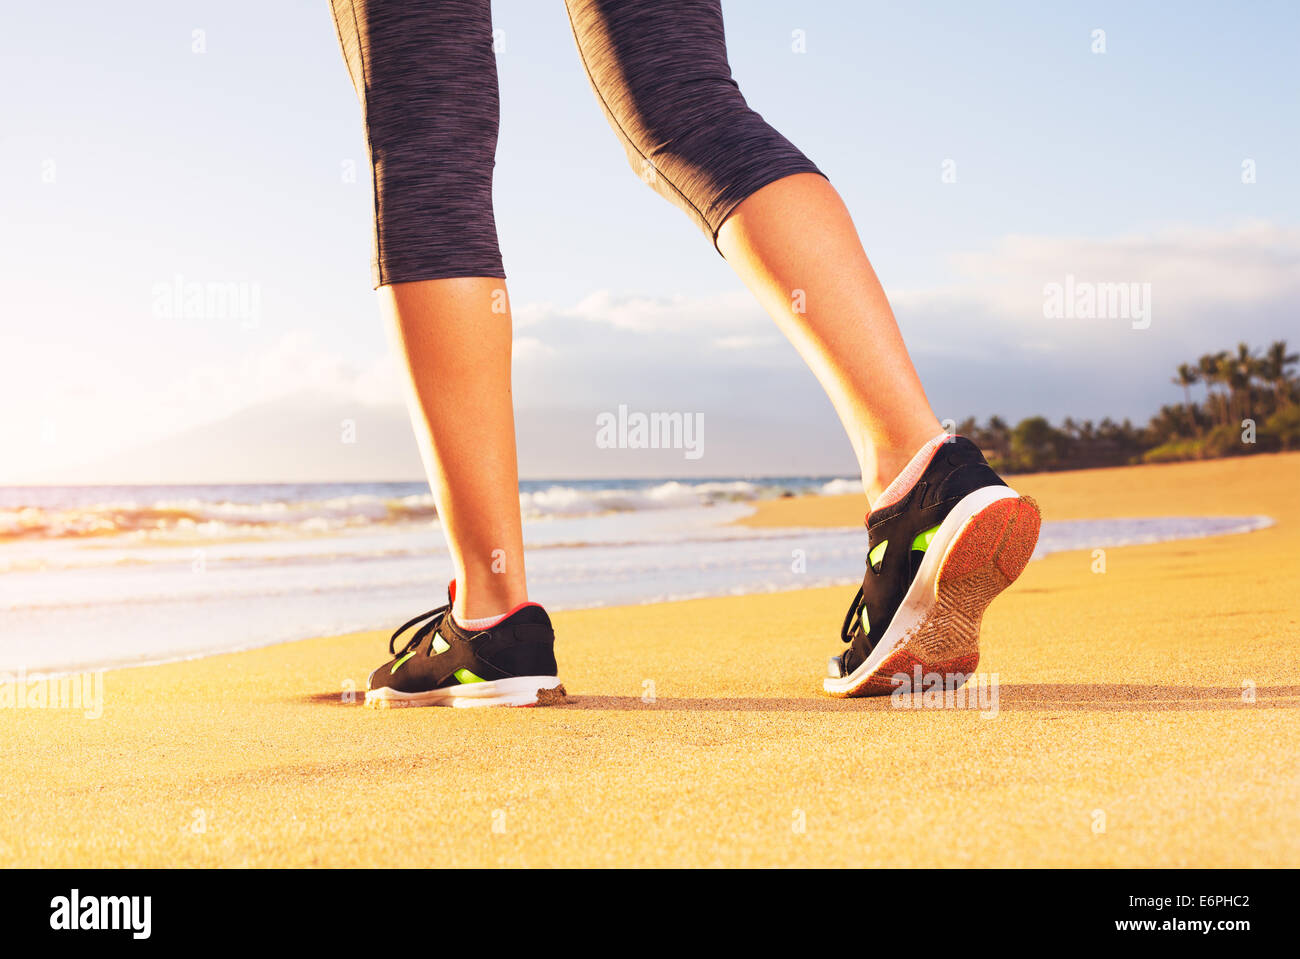 Athlet Laufer Fusse Am Strand Laufen Nahaufnahme Auf Schuh Und Beine Frau Sonnenuntergang Fitness Workout Wellness Gesundheit Co Stockfotografie Alamy